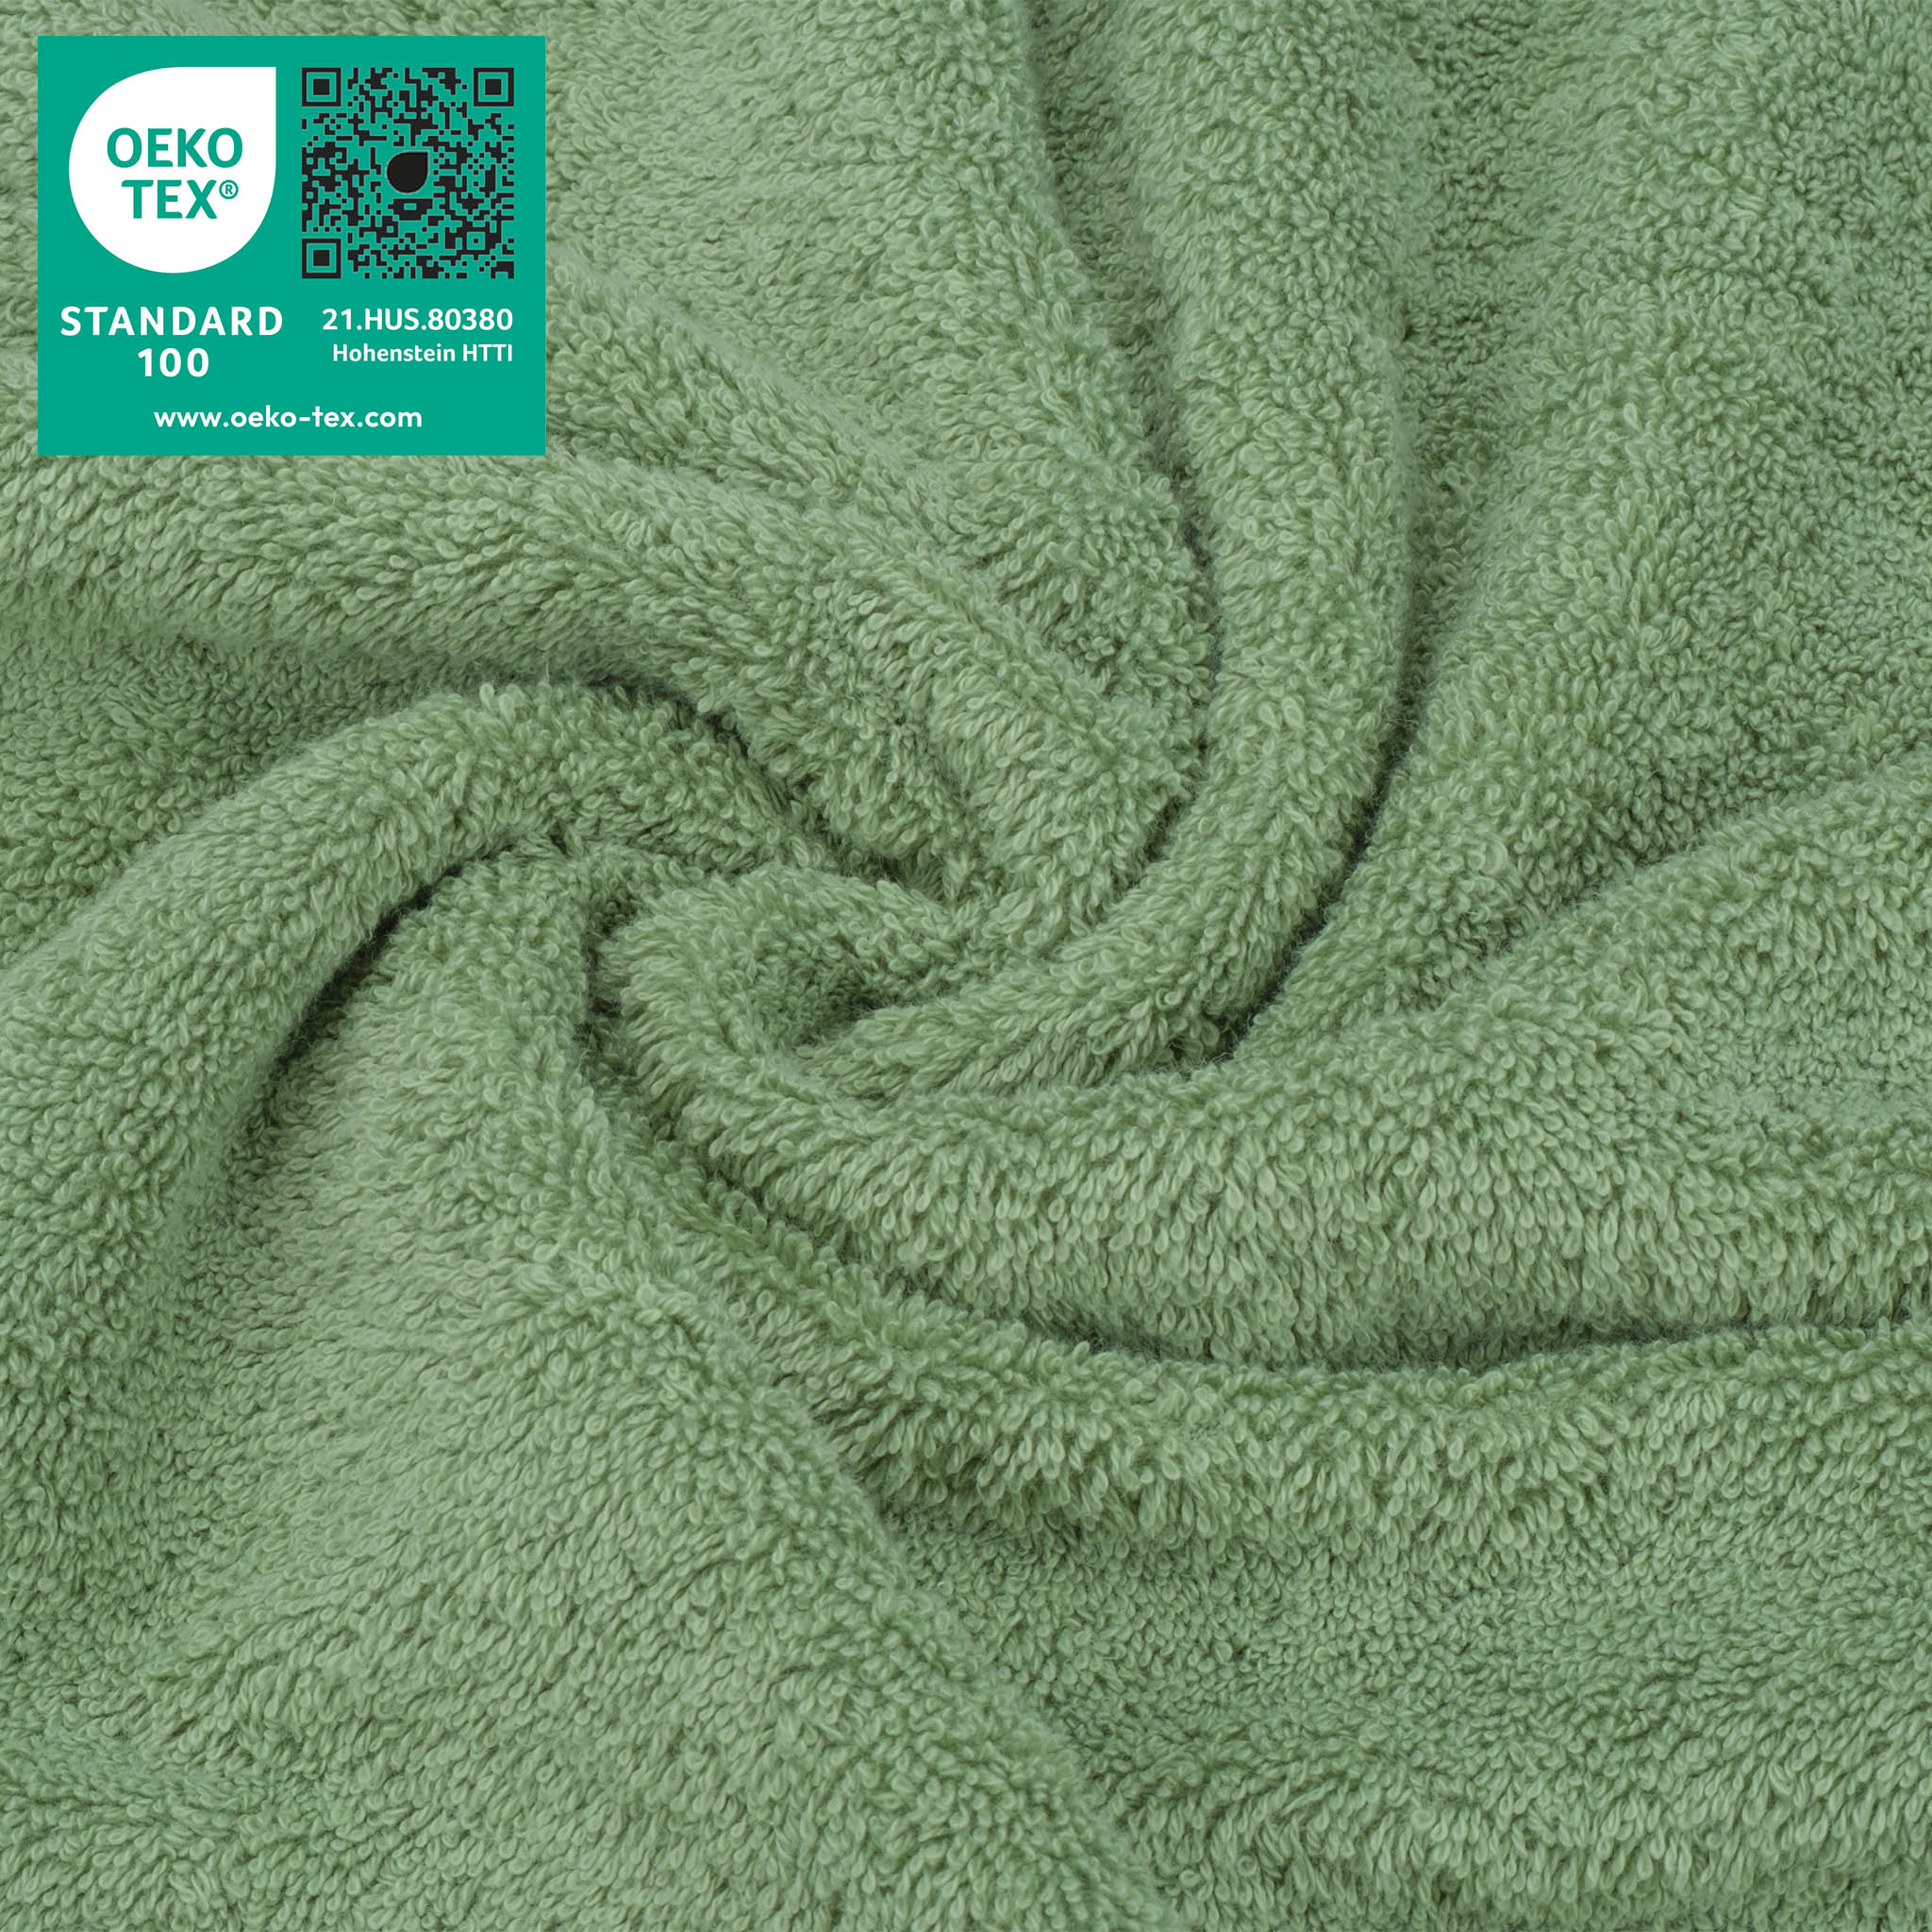 American Soft Linen 100% Turkish Cotton 4 Piece Washcloth Set sage-green-3